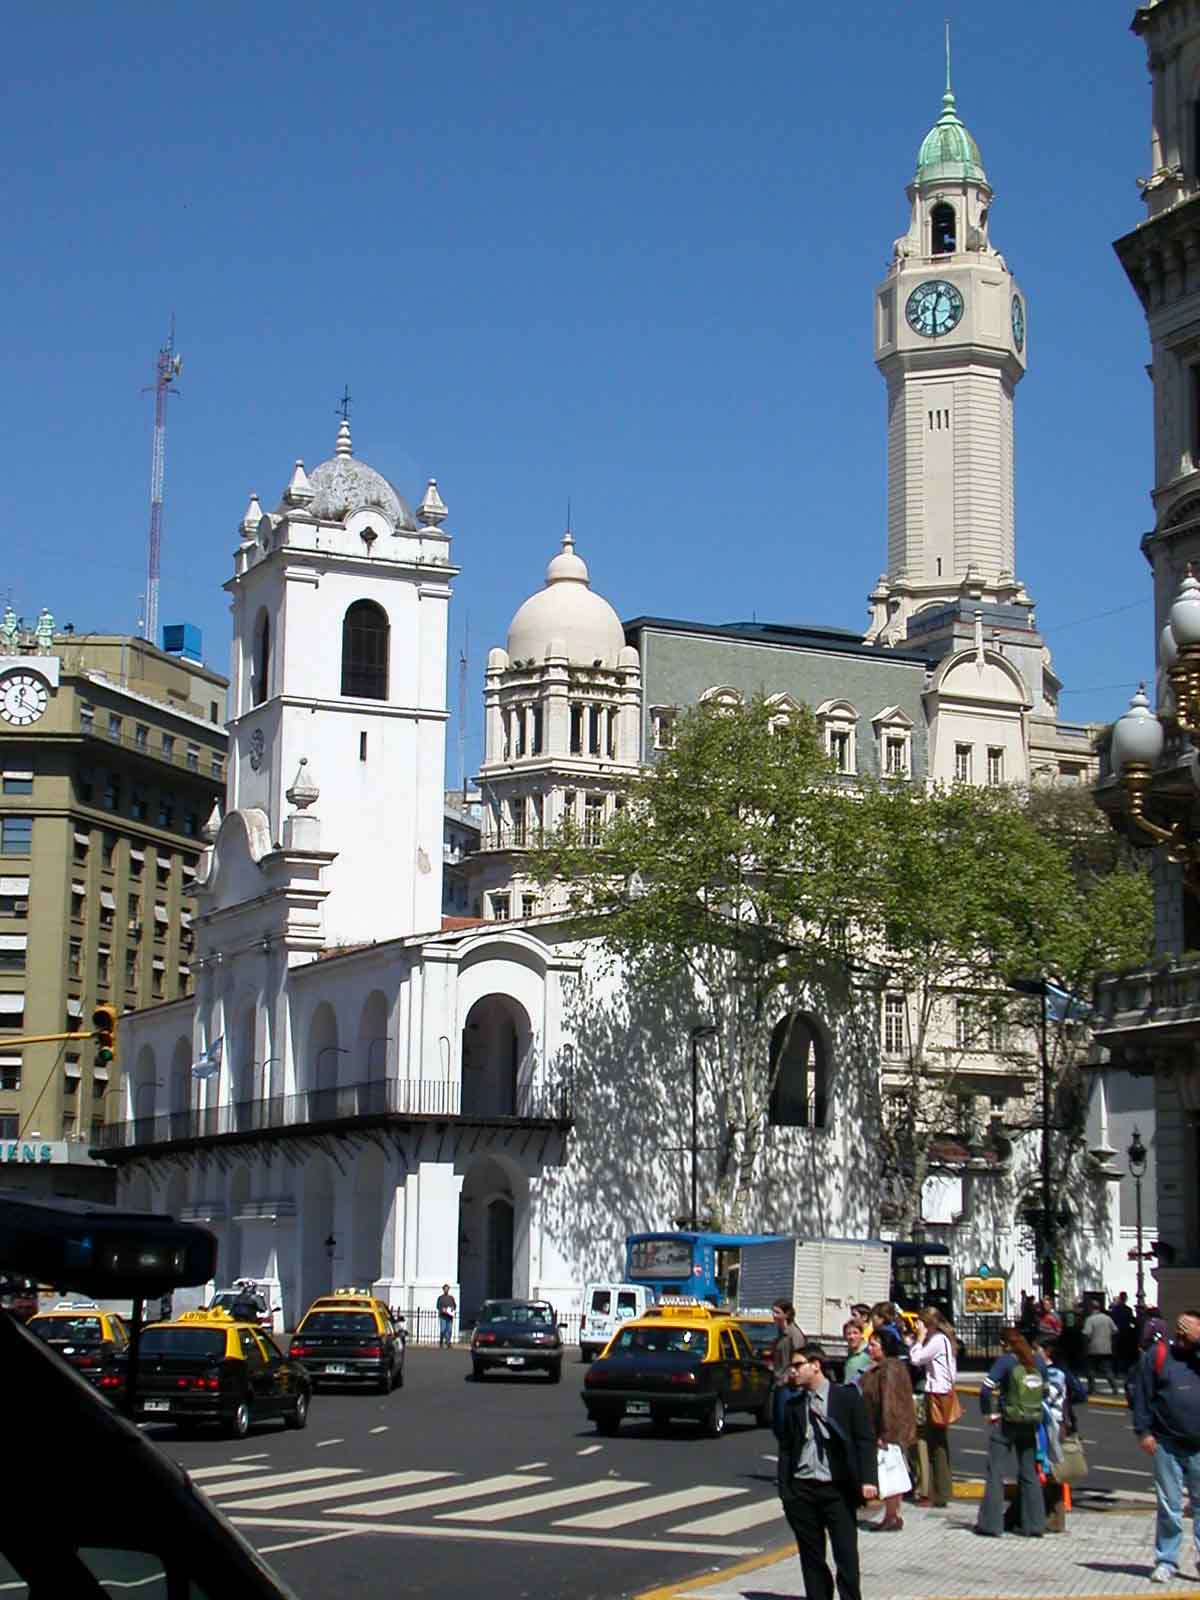 Buenos Aires - Cabildo